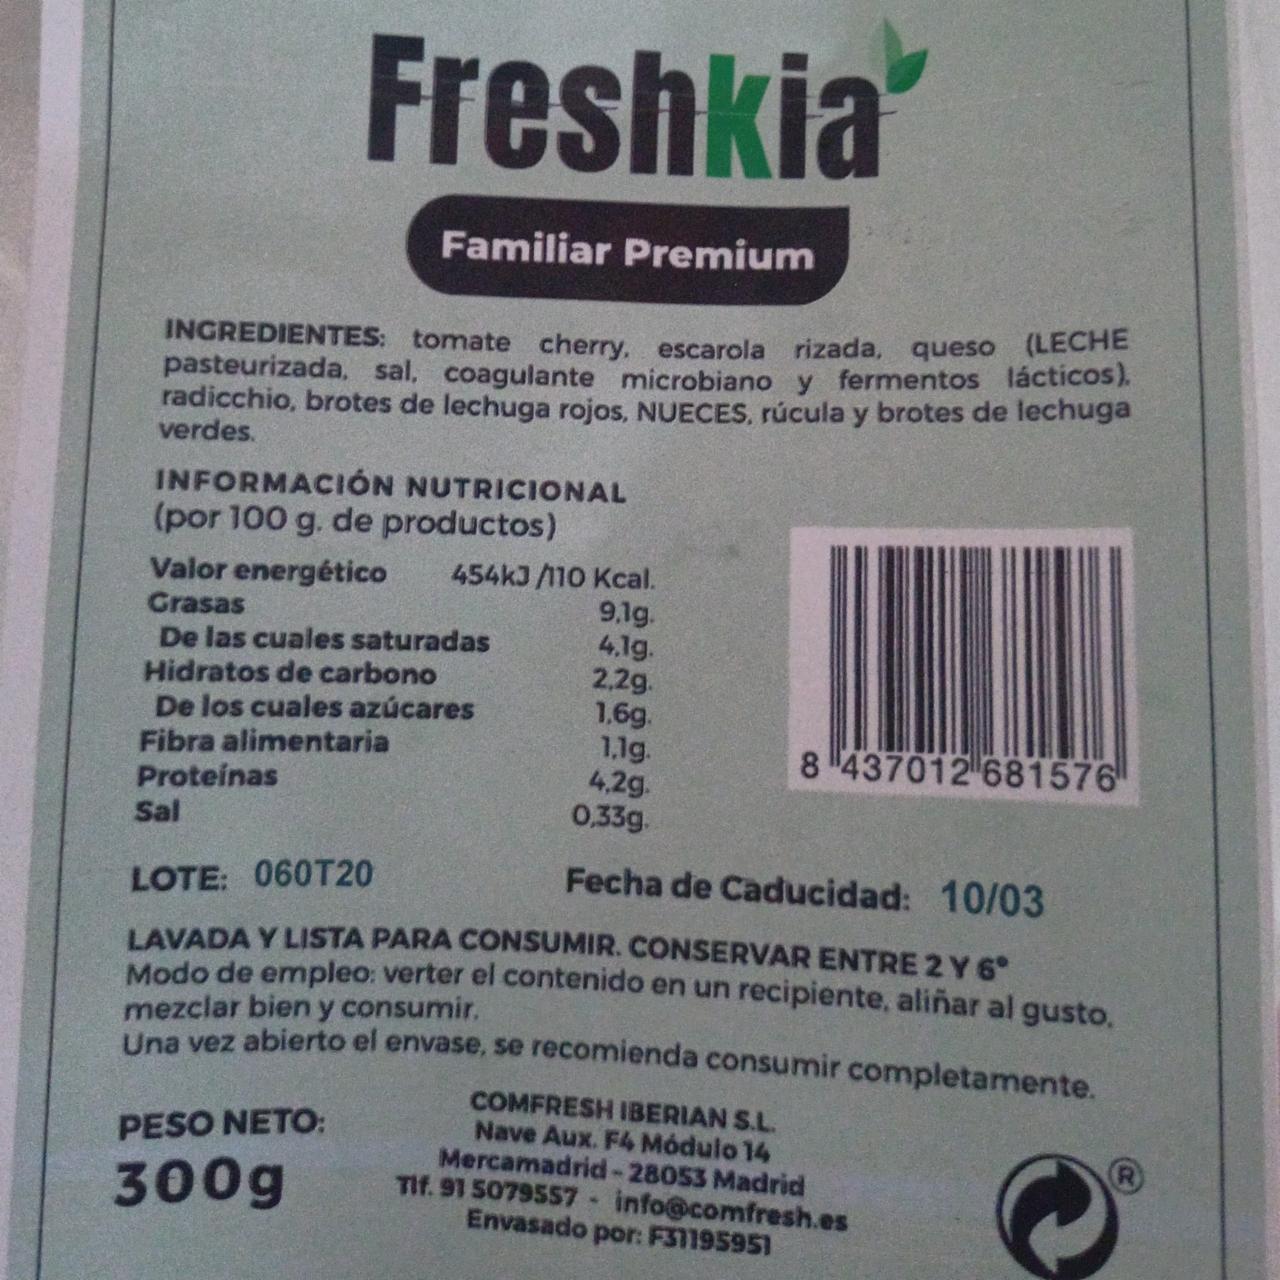 Fotografie - Familiar Premium Freshkia